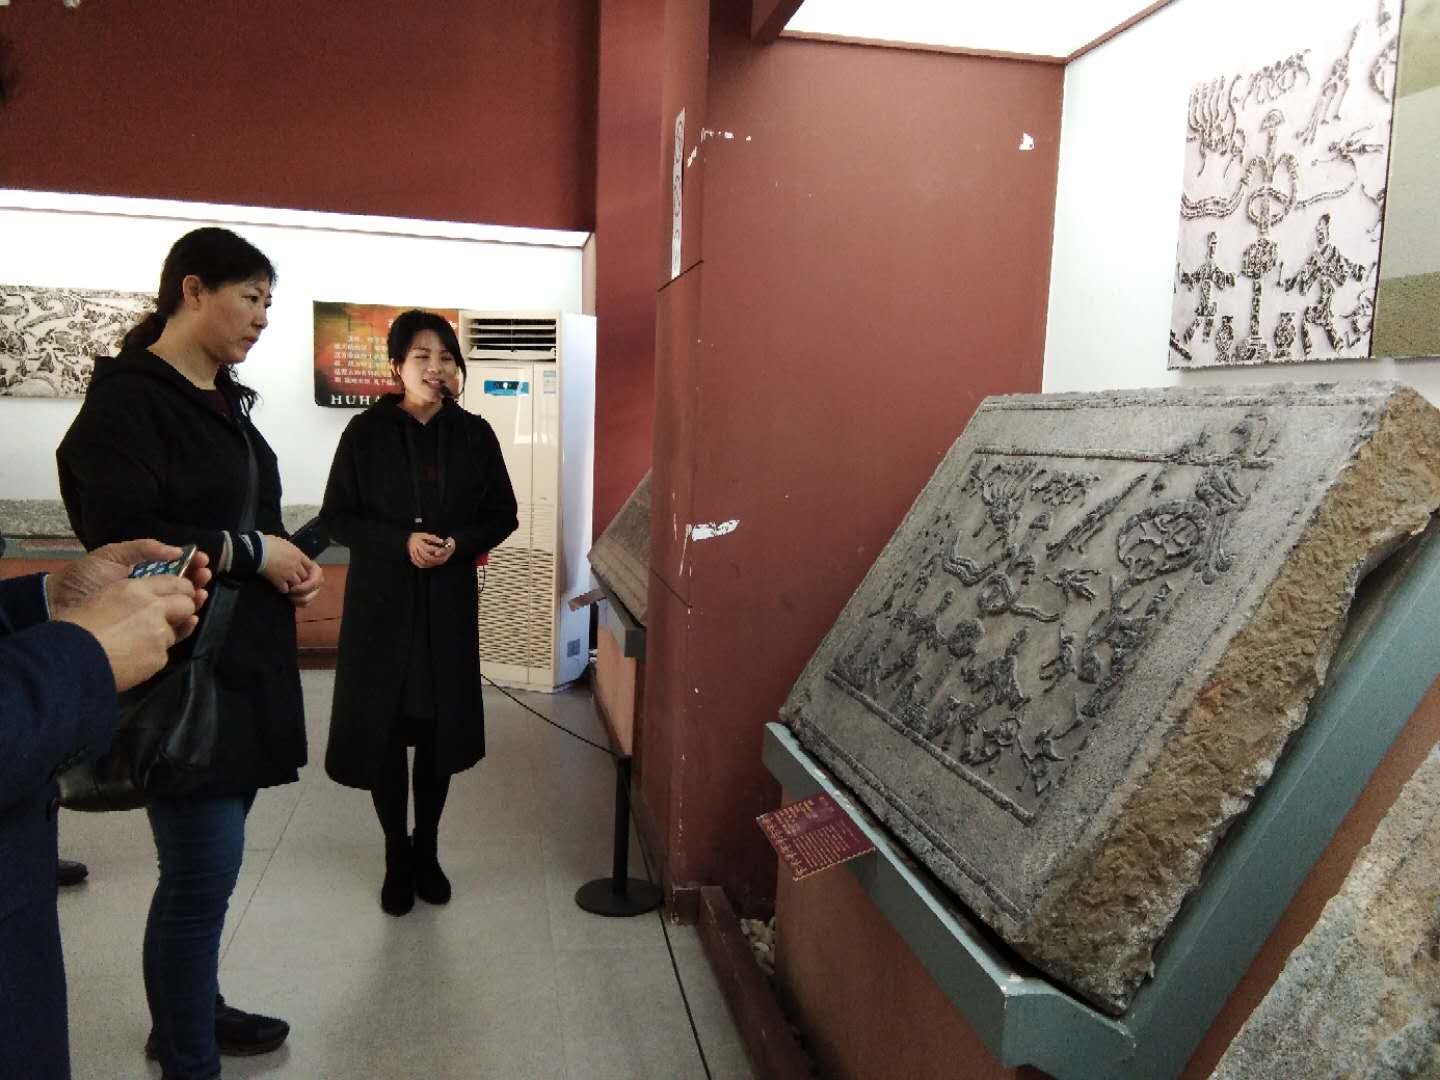 发现鲁南文化之美|滕州汉画像石馆:社会的缩影,一部绣像的汉代史